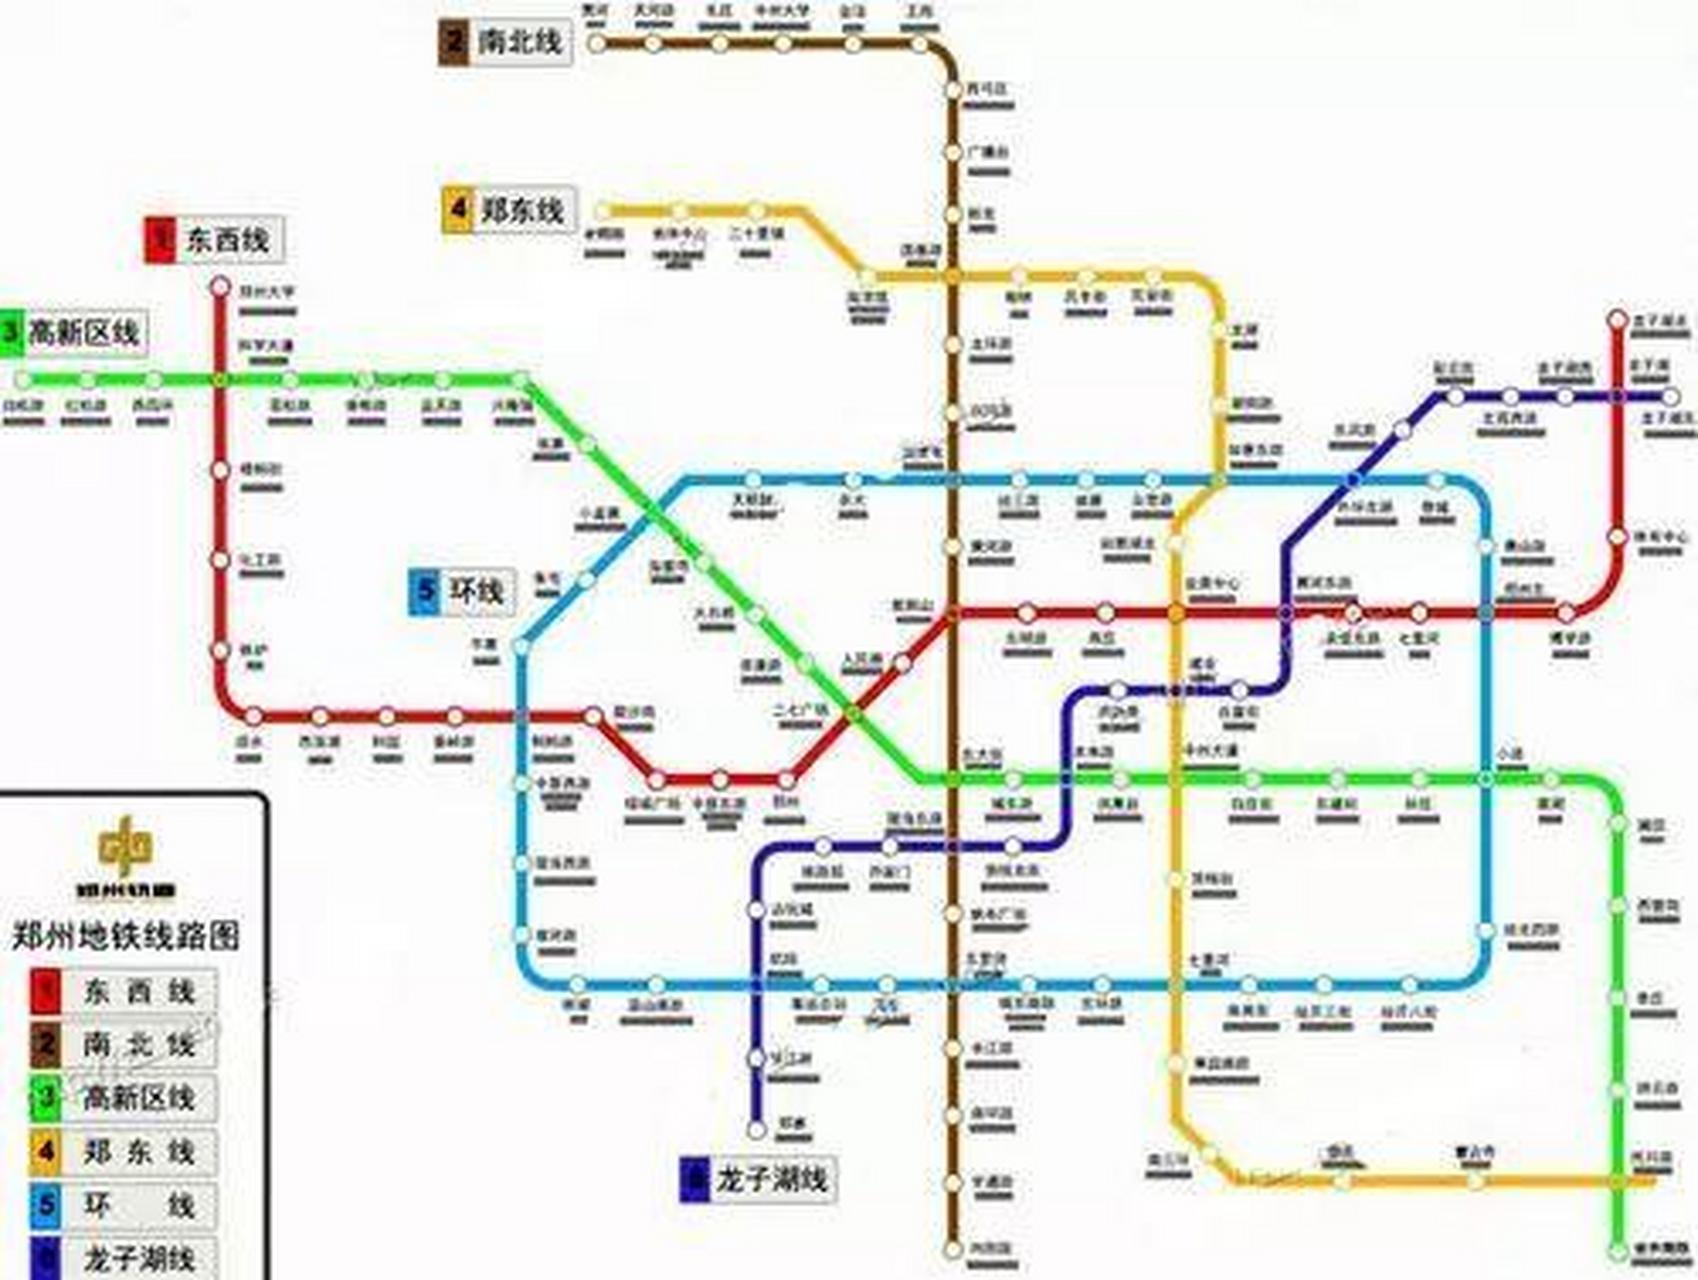 厉害了,郑州地铁建造太快了,在12月23日郑州地铁4号线已经开始试运营